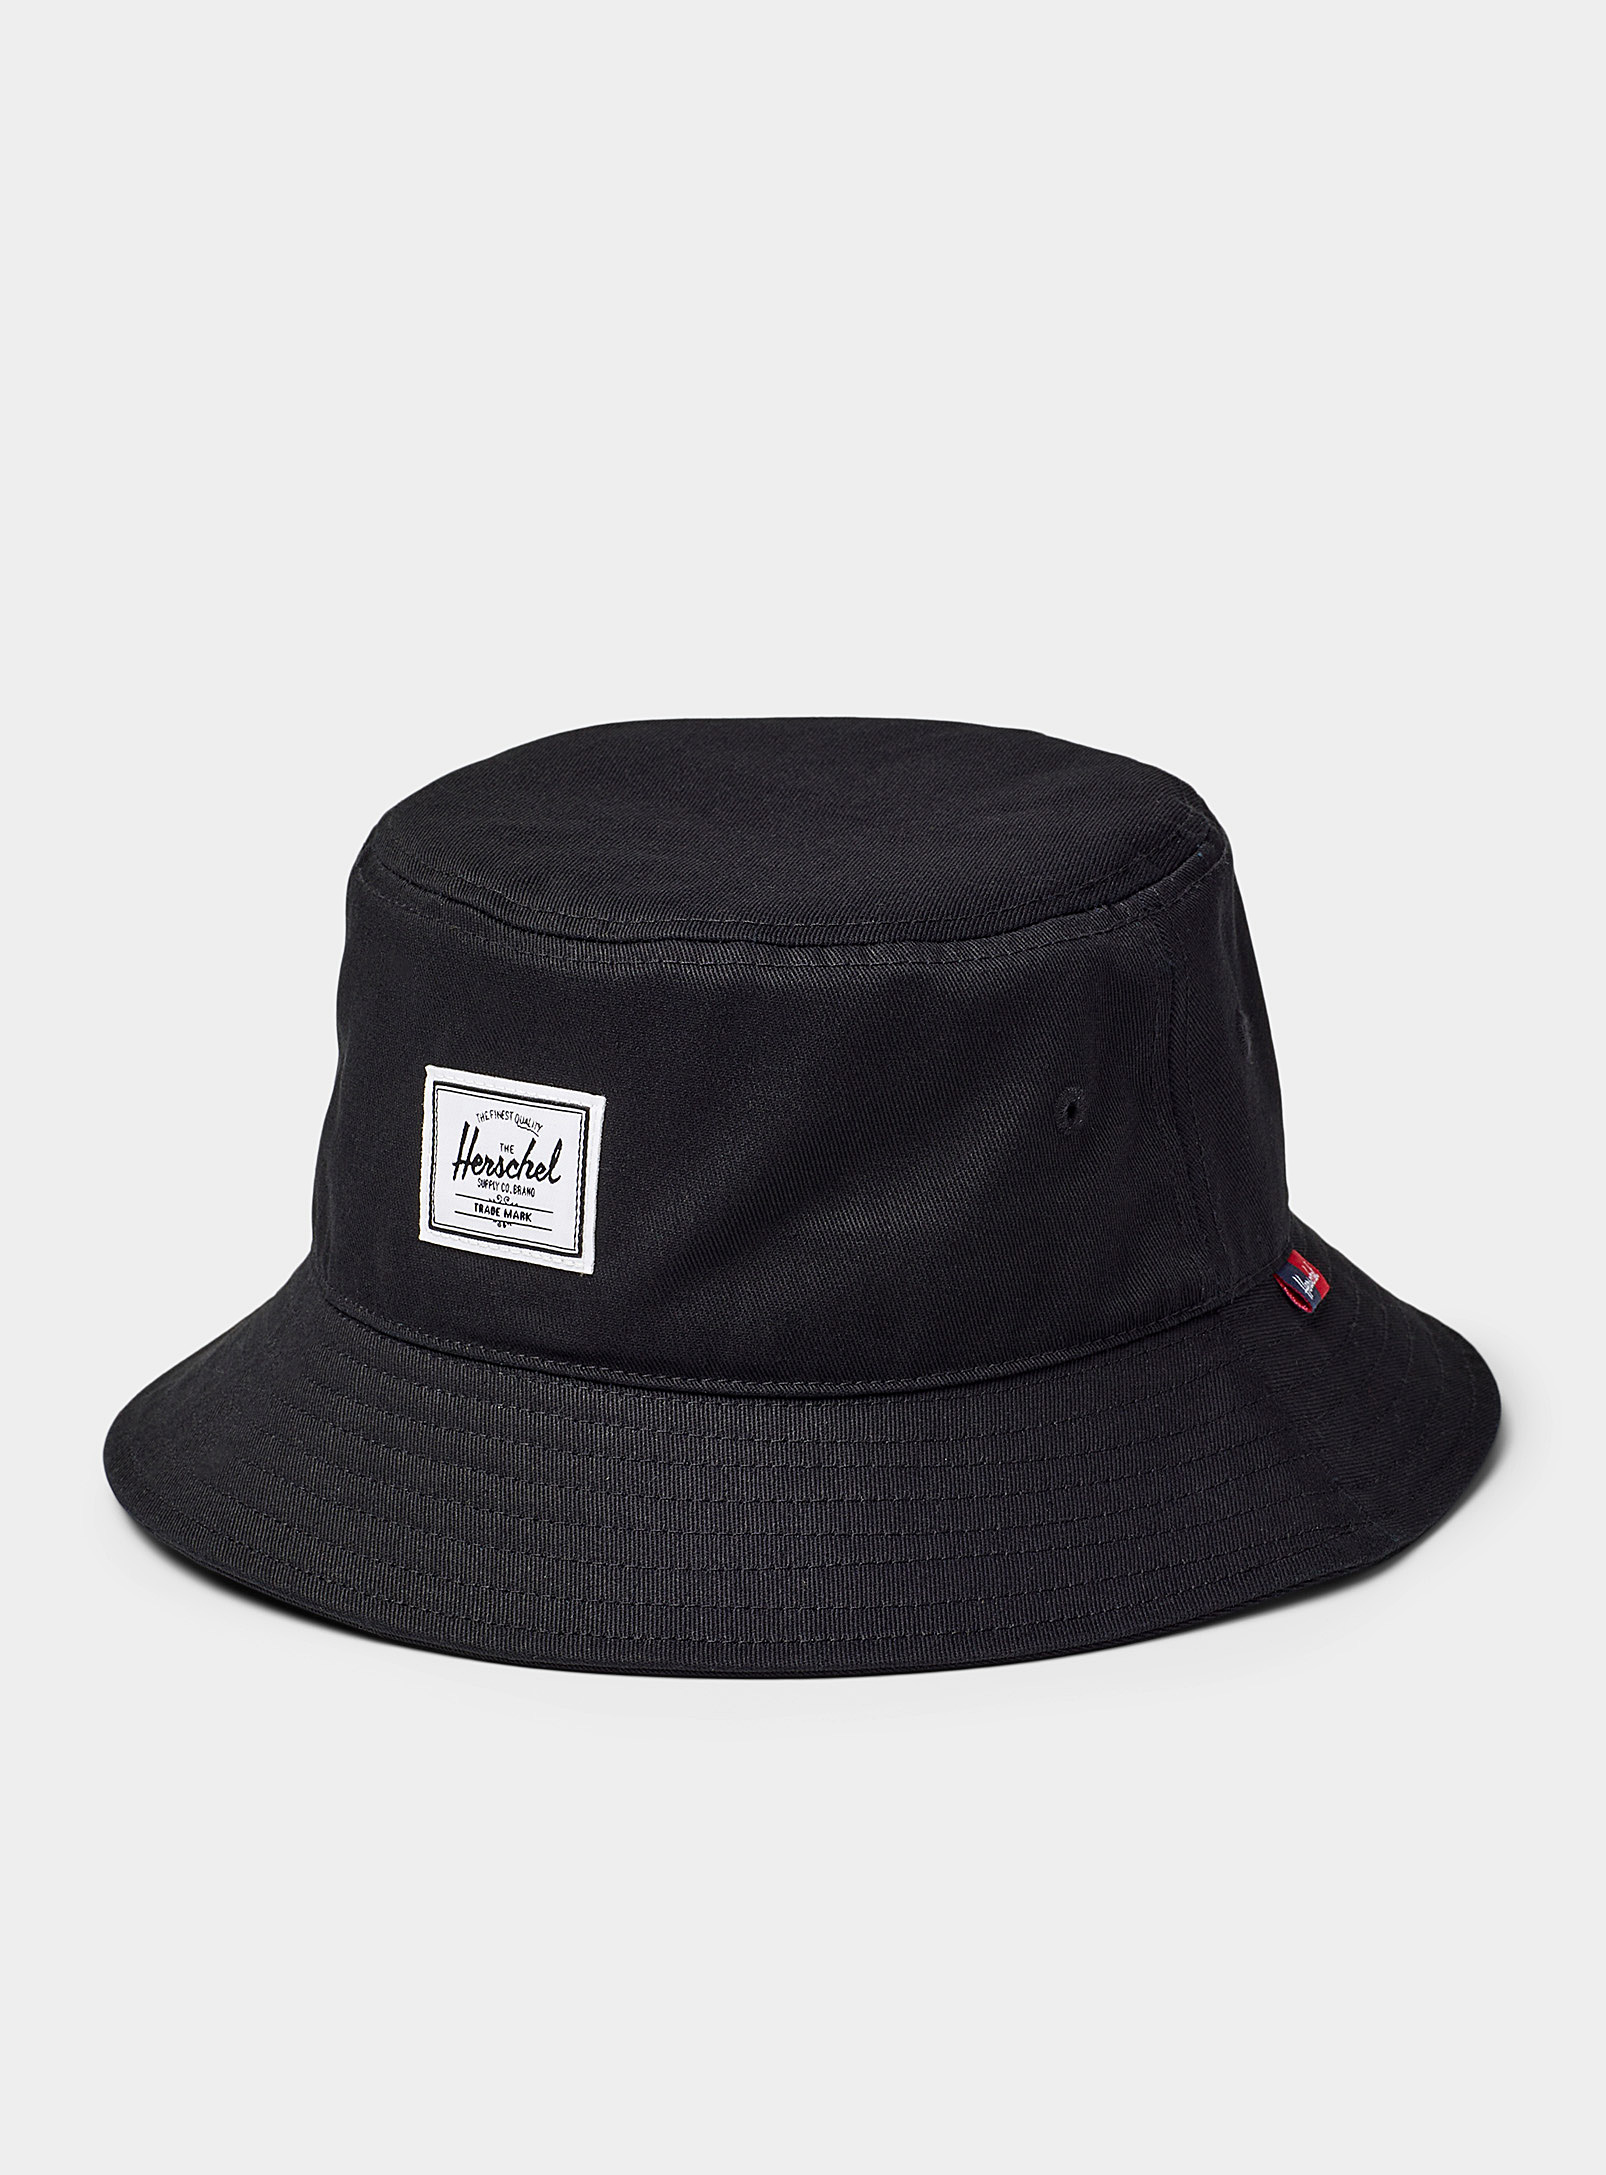 Herschel - Men's Norman bucket hat